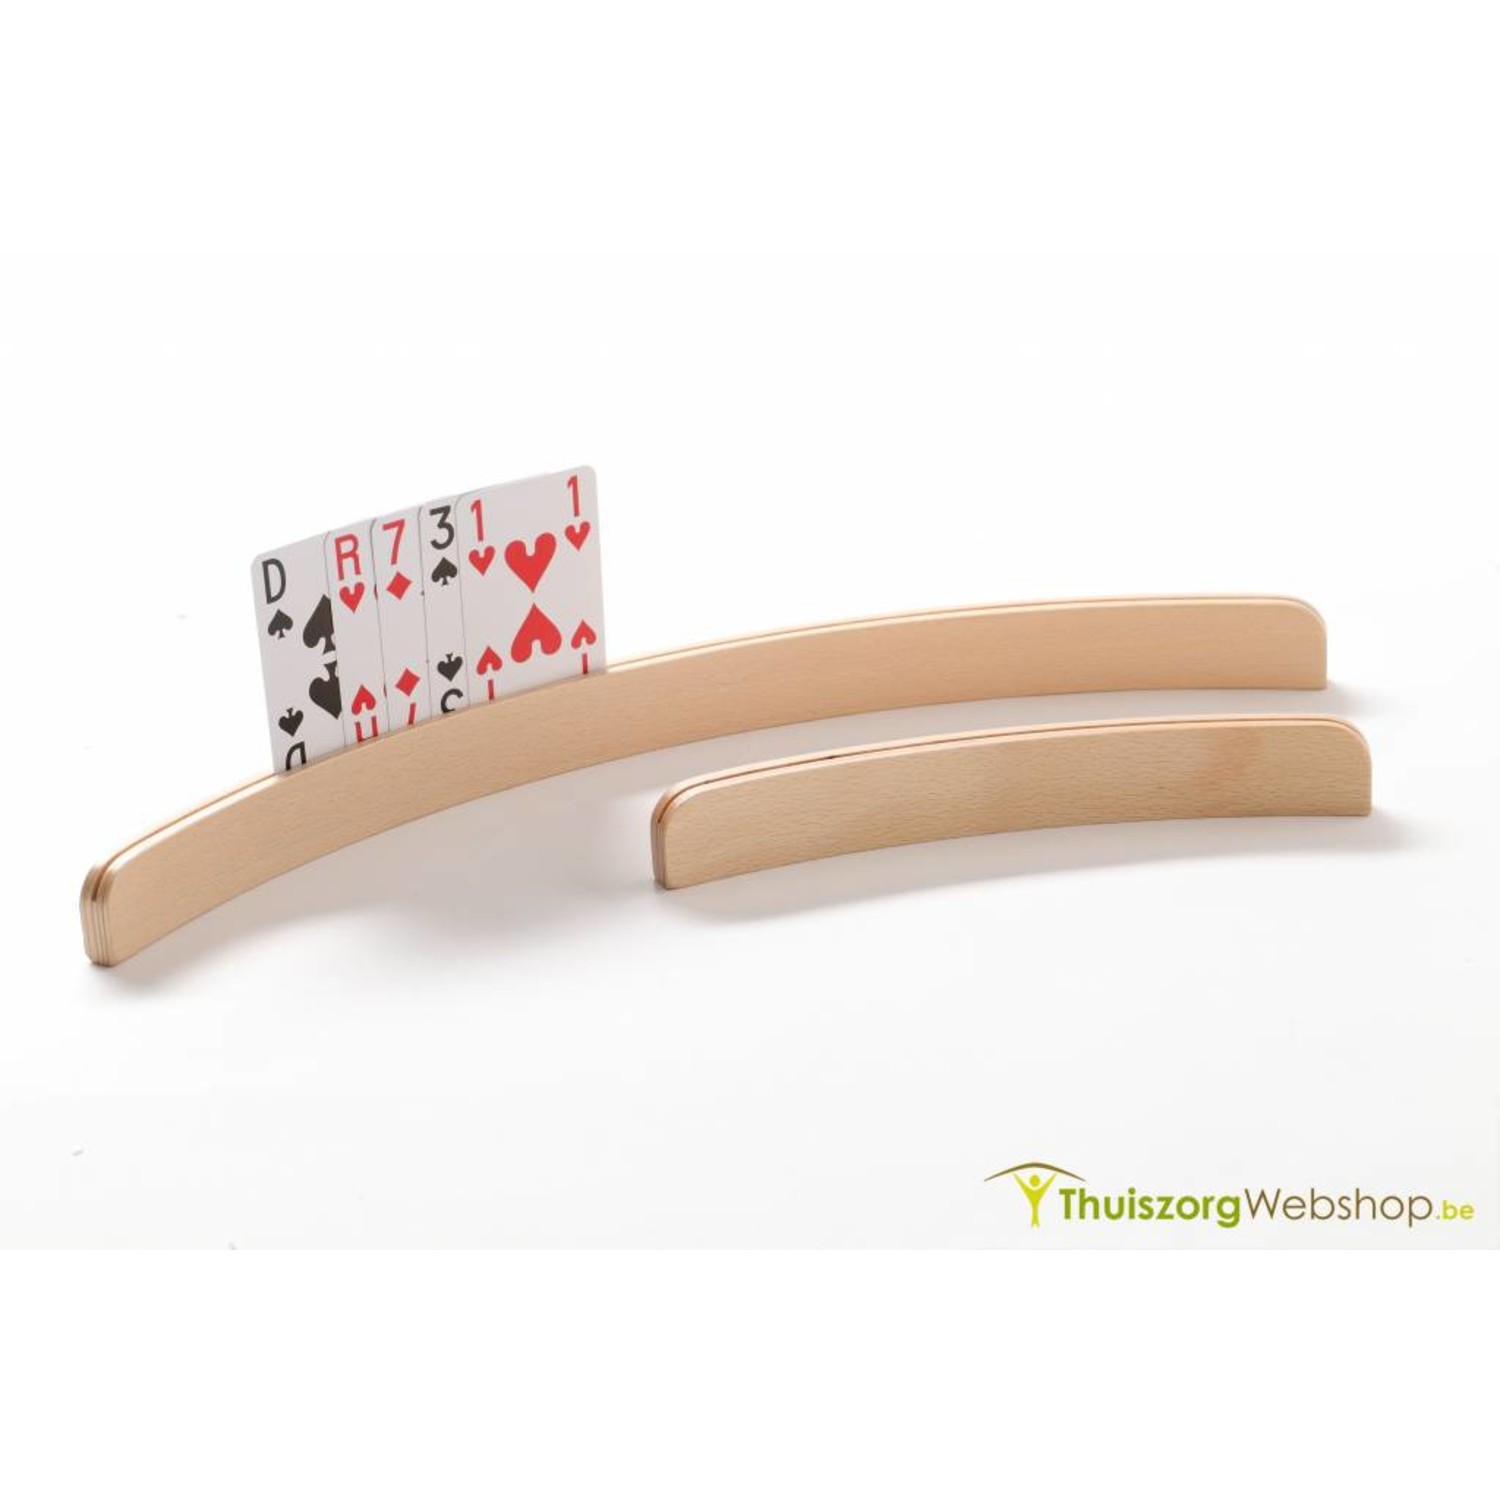 Streven morfine Psychologisch Luxe houten speelkaartenhouder Kopen - ThuiszorgWebshop.be